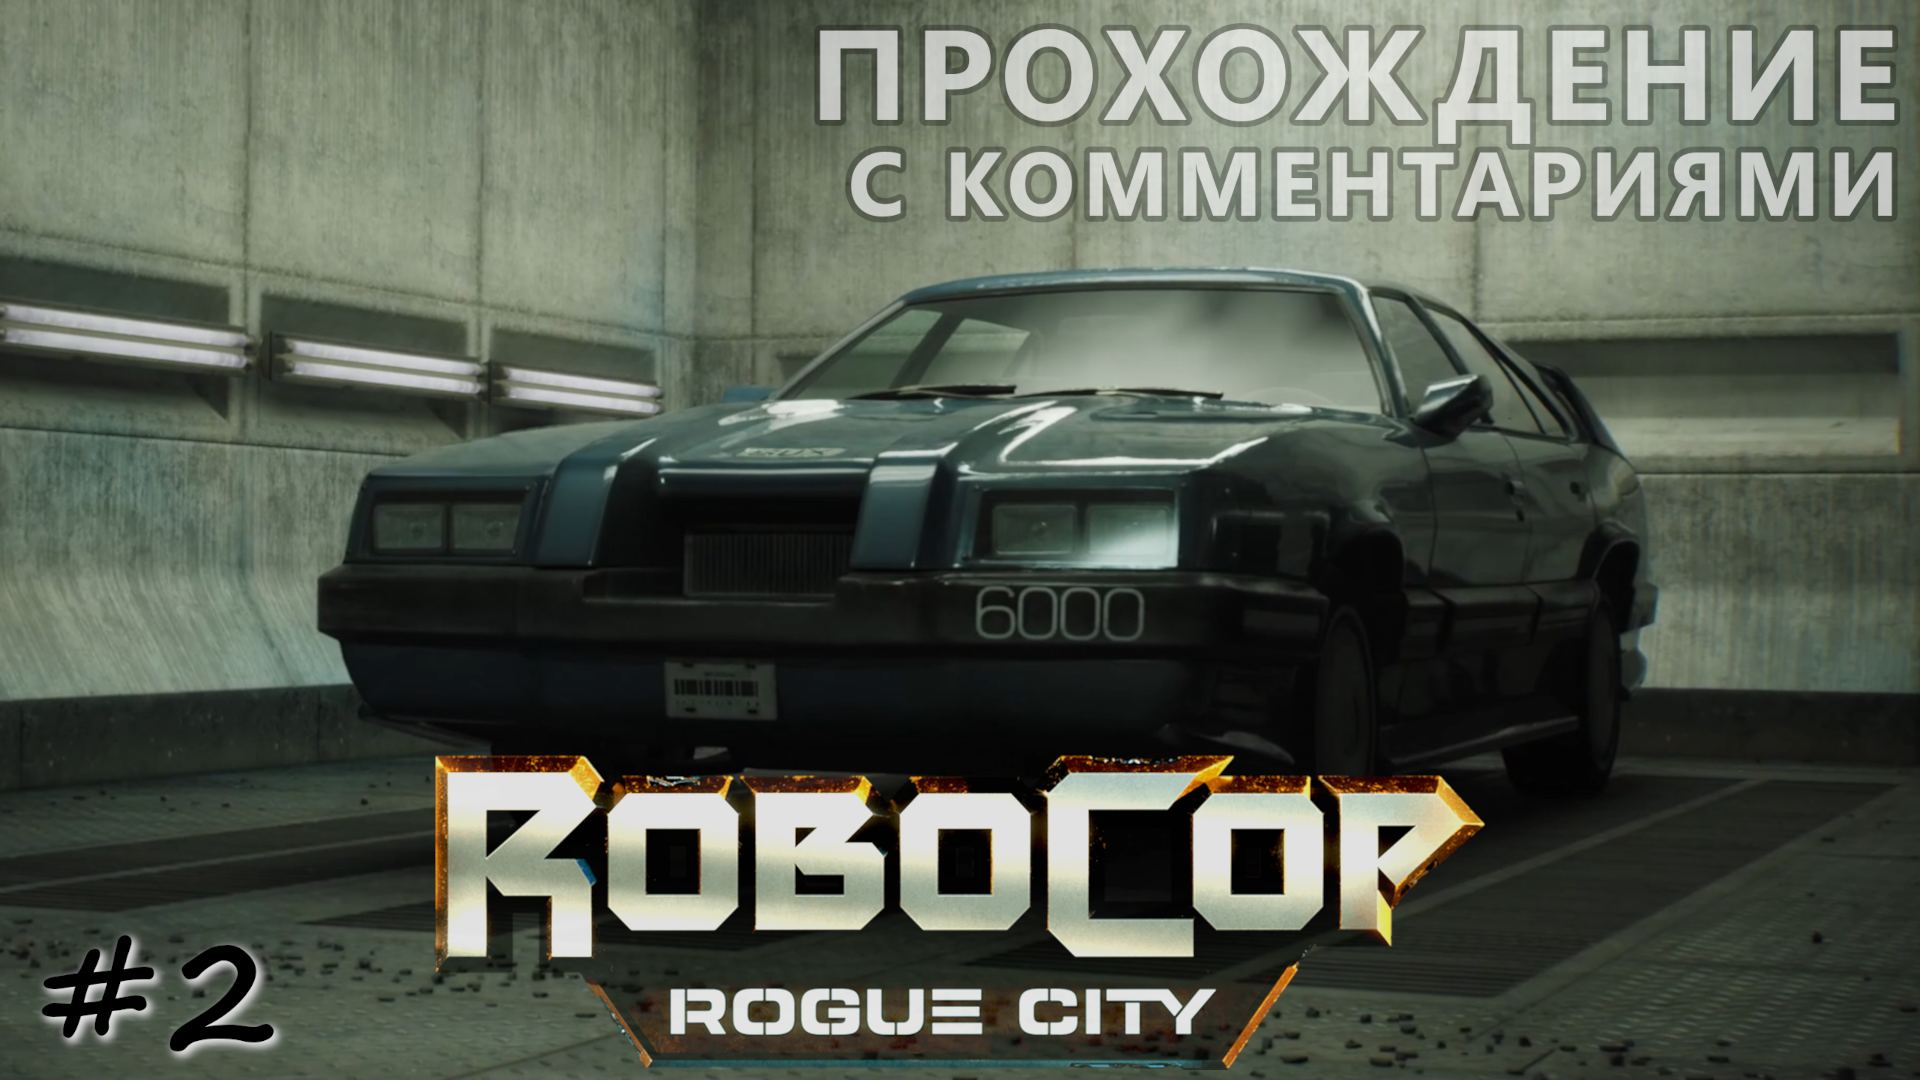 Исследование центра города и поиск автомобиля - #2 - RoboCop Rogue City